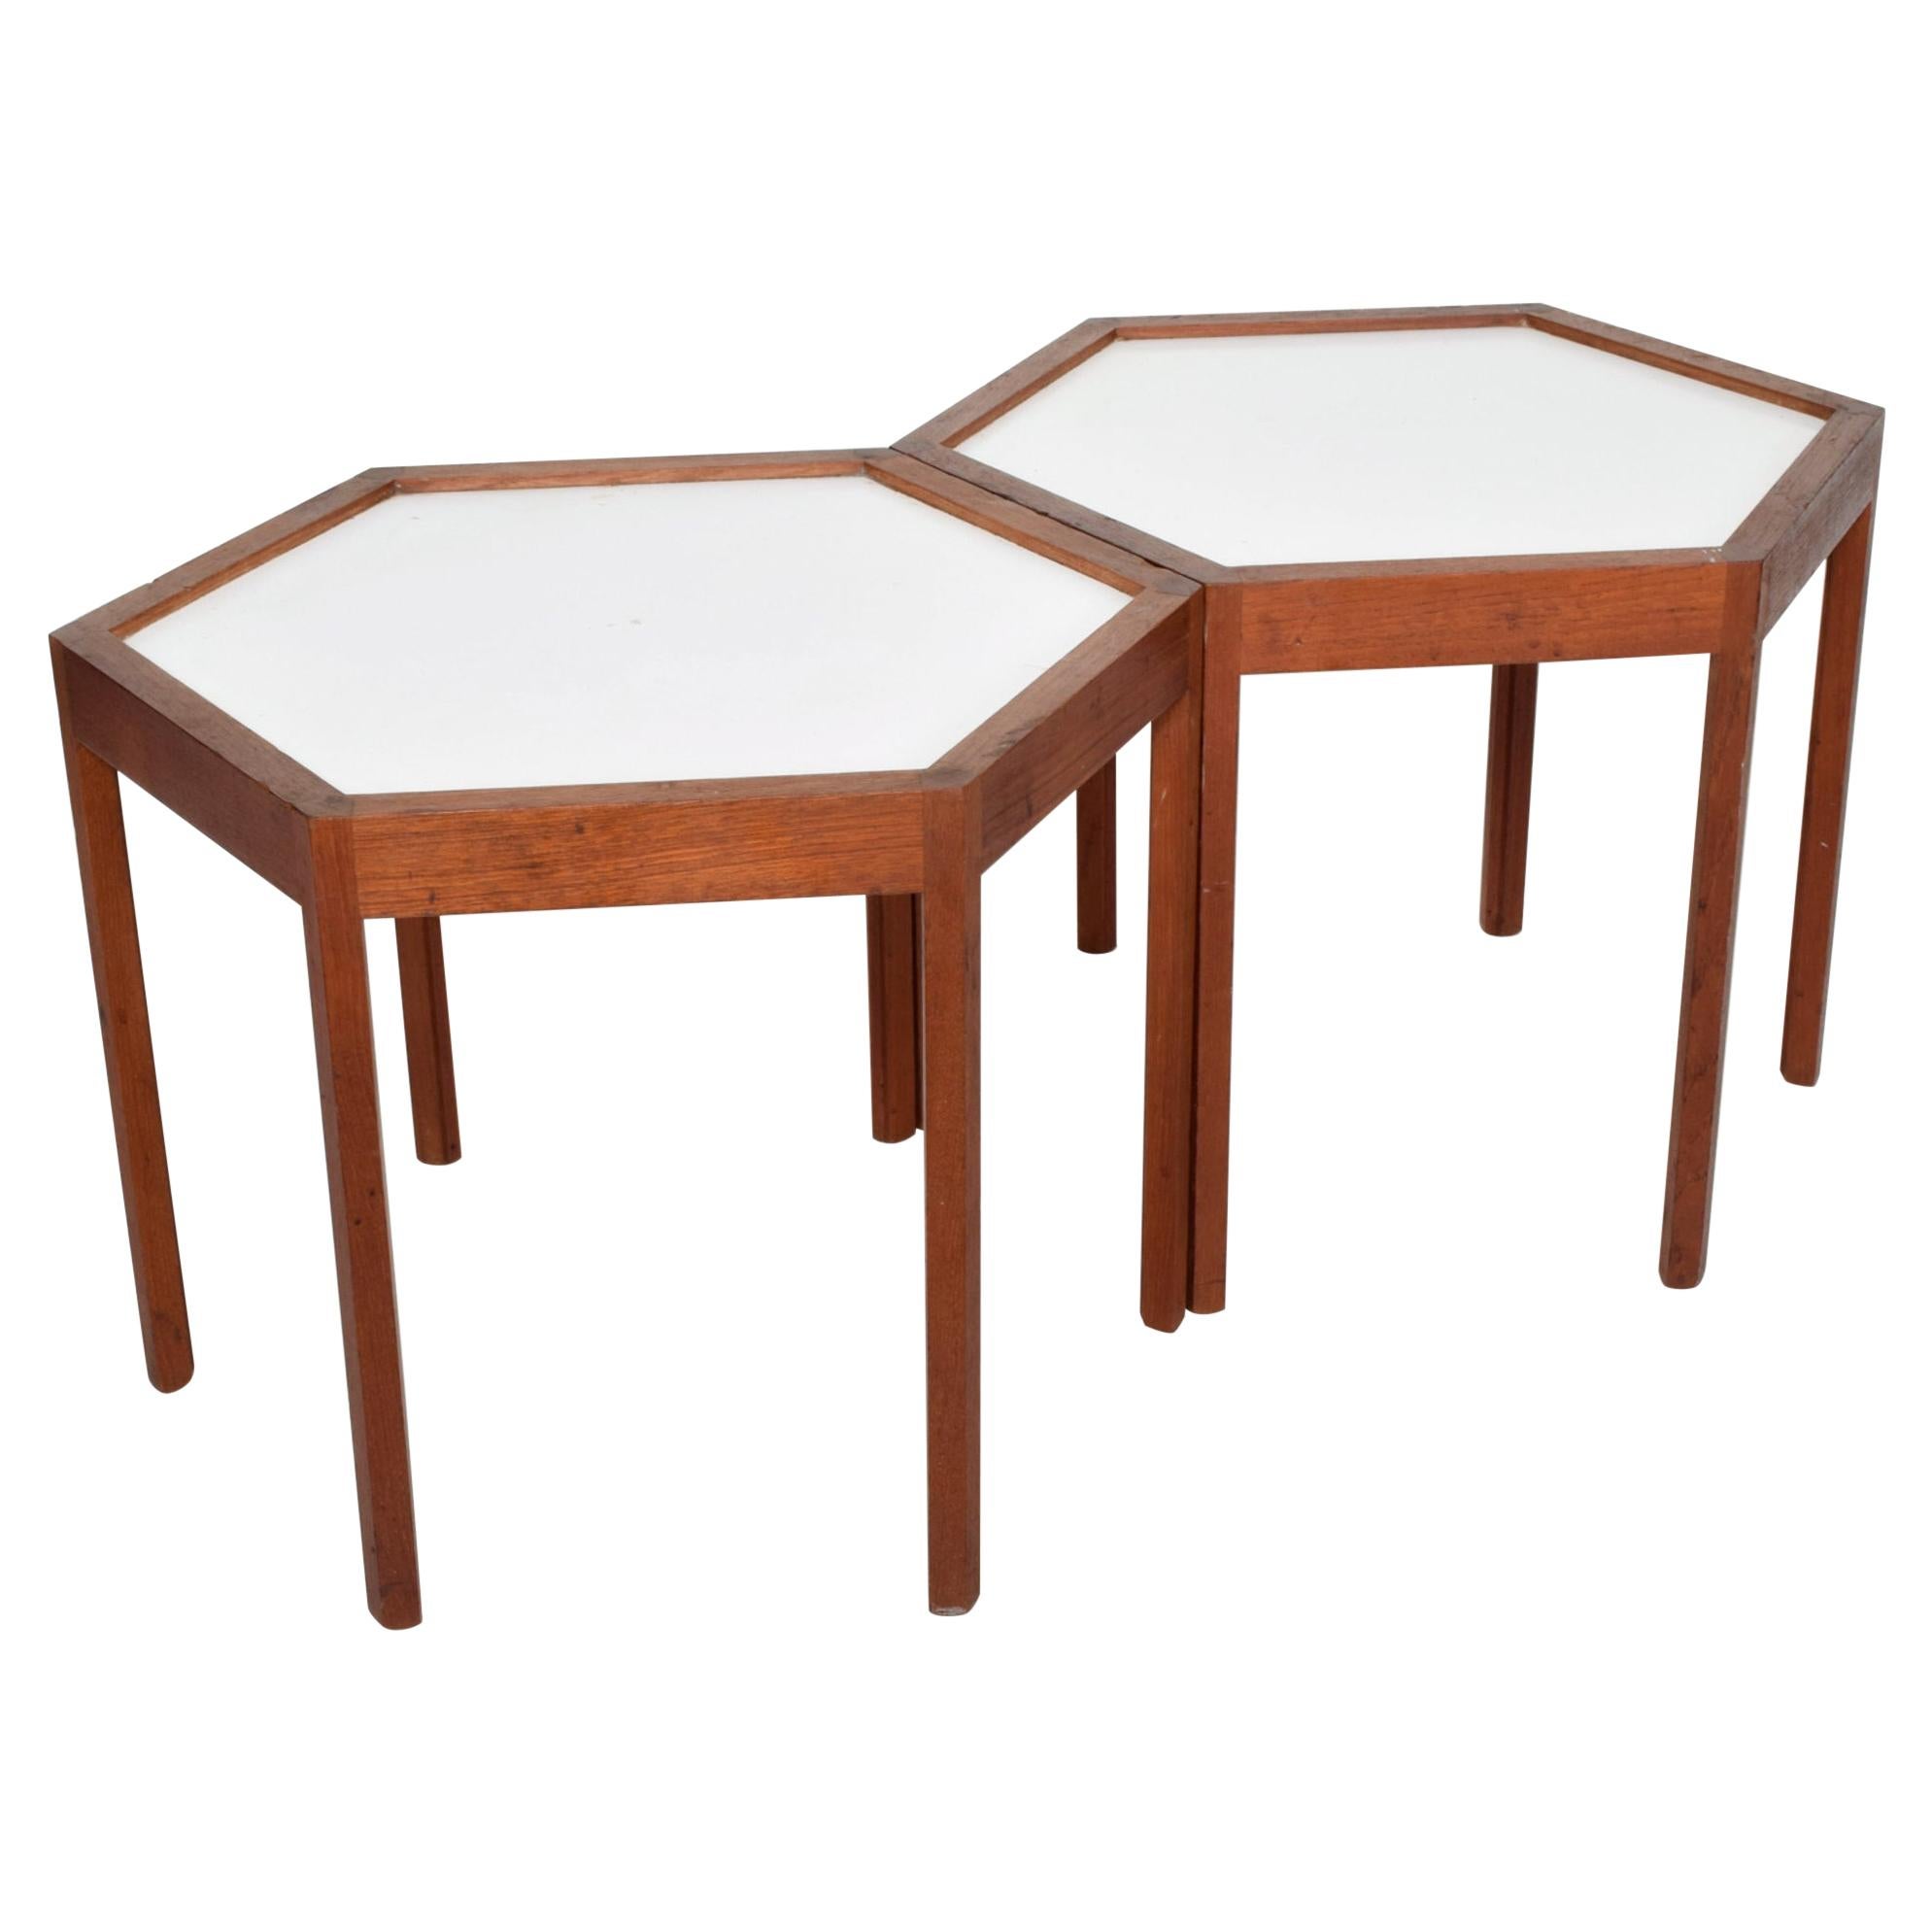 White Hexagonal Solid Teak Side Tables by Hans C Andersen 1960s Denmark